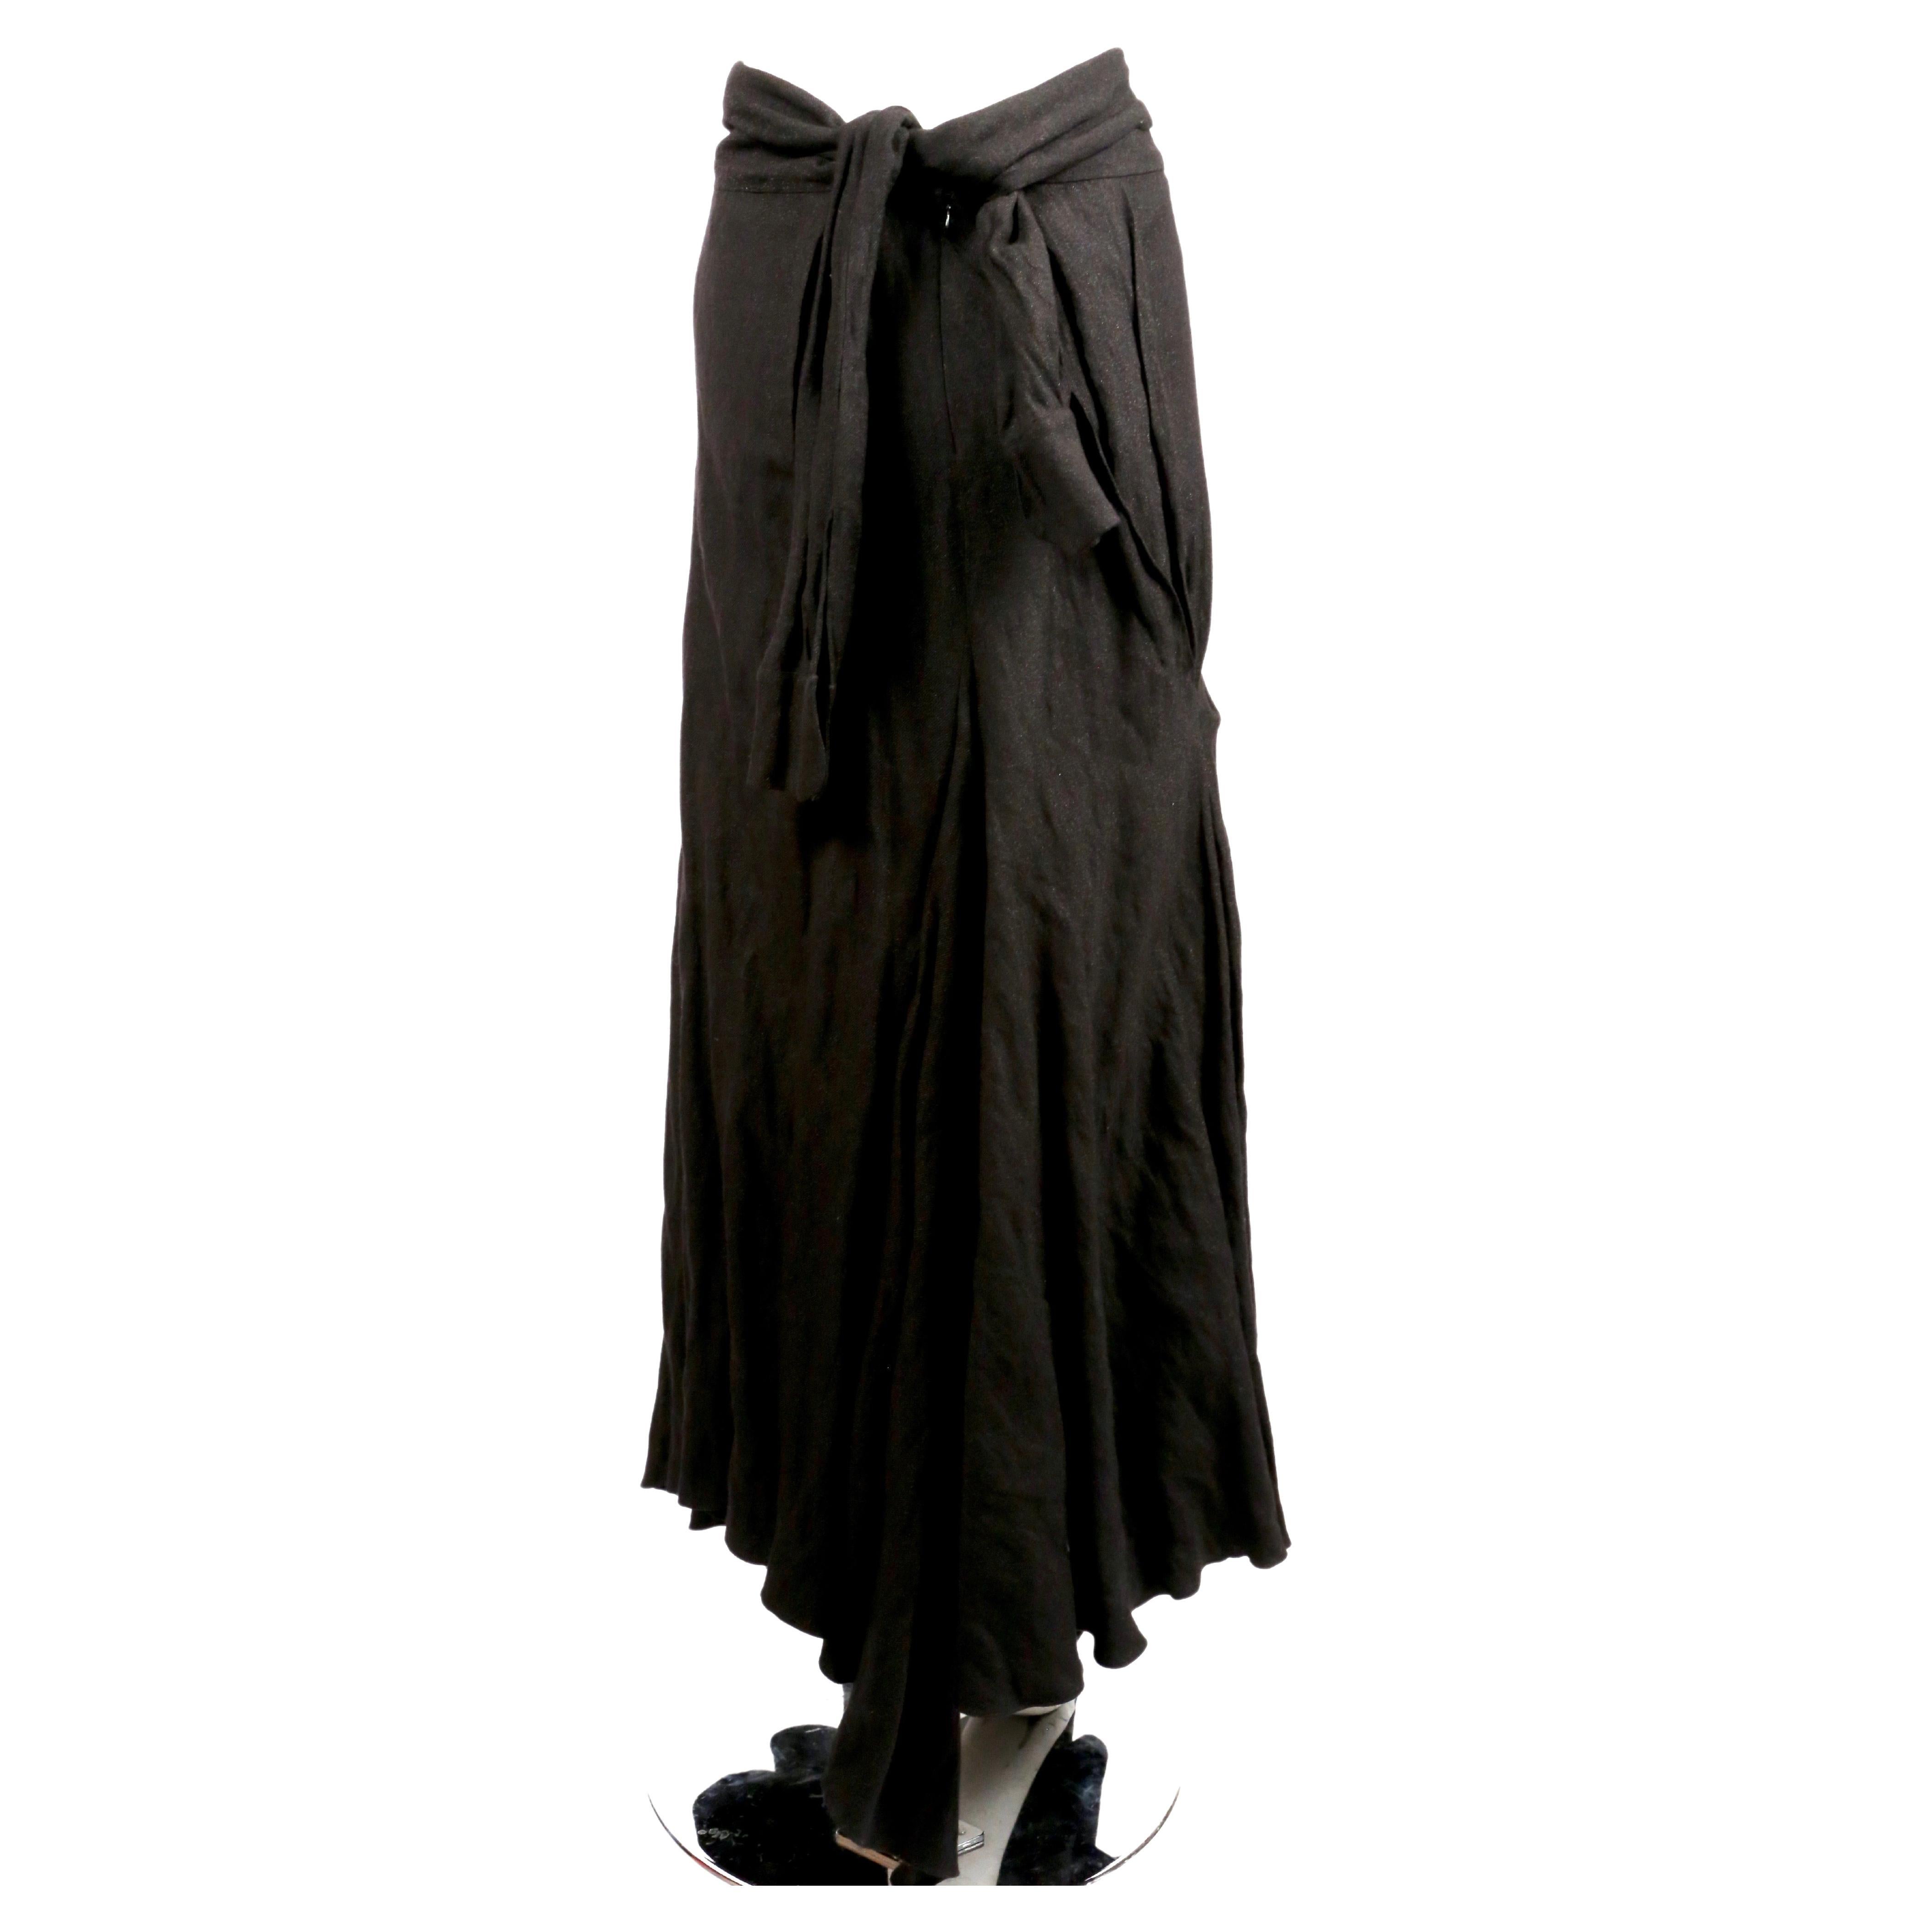 Jupe longue drapée d'un noir tendre, dotée d'un lien unique à l'arrière de la taille, conçu par John Galliano au début des années 2000. La jupe est très souple lorsque vous marchez. Taille française 38. Mesures approximatives : taille 29